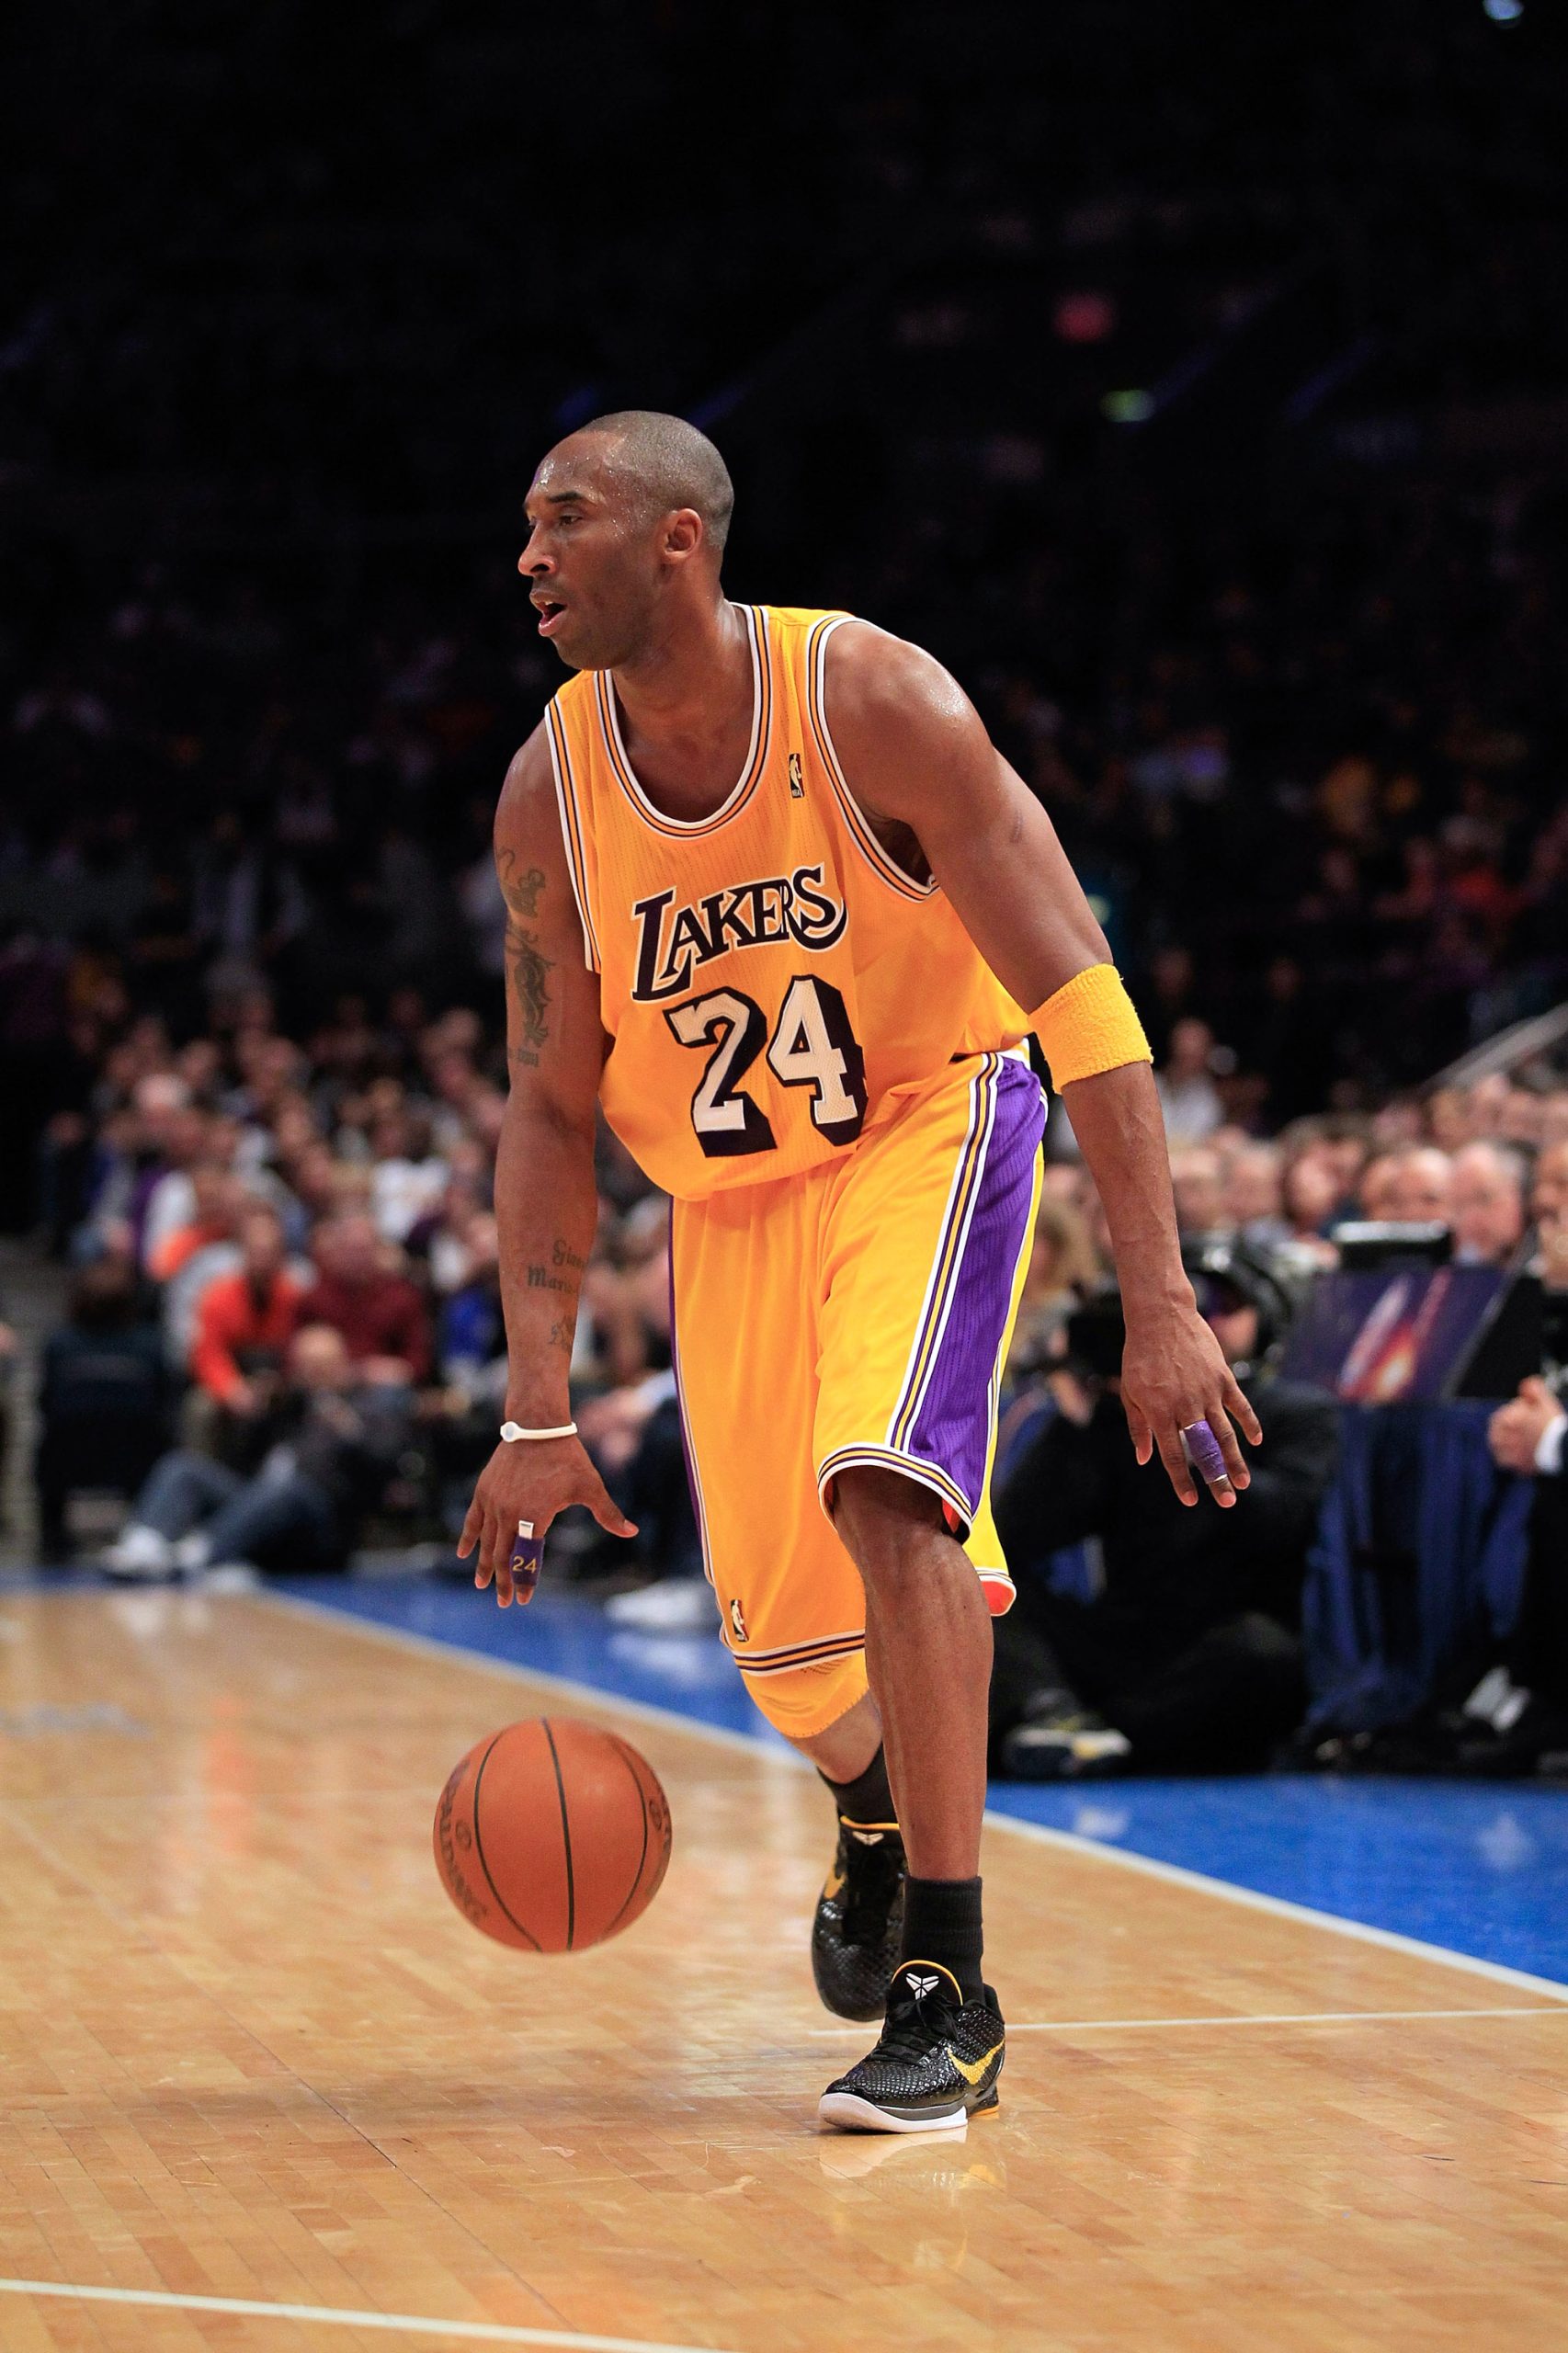 Four Best Kobe Shoes Worn in NBA Last Night